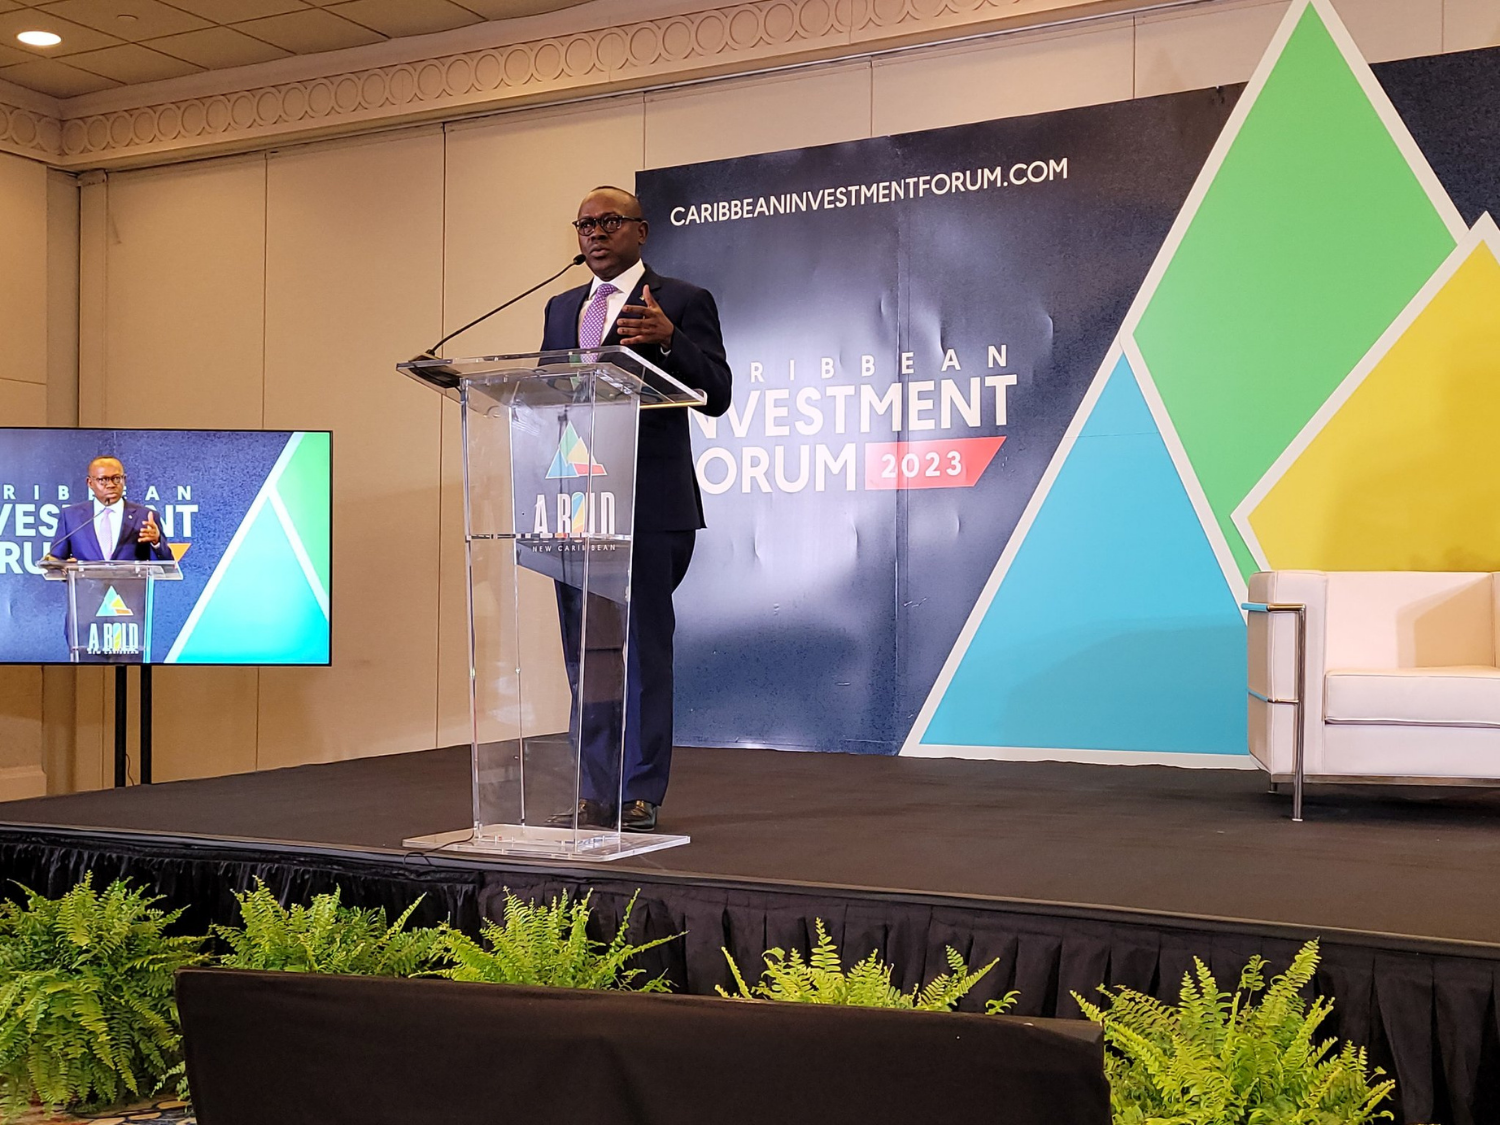 El Foro de Inversión del Caribe 2023 promete grandes oportunidades y resultados